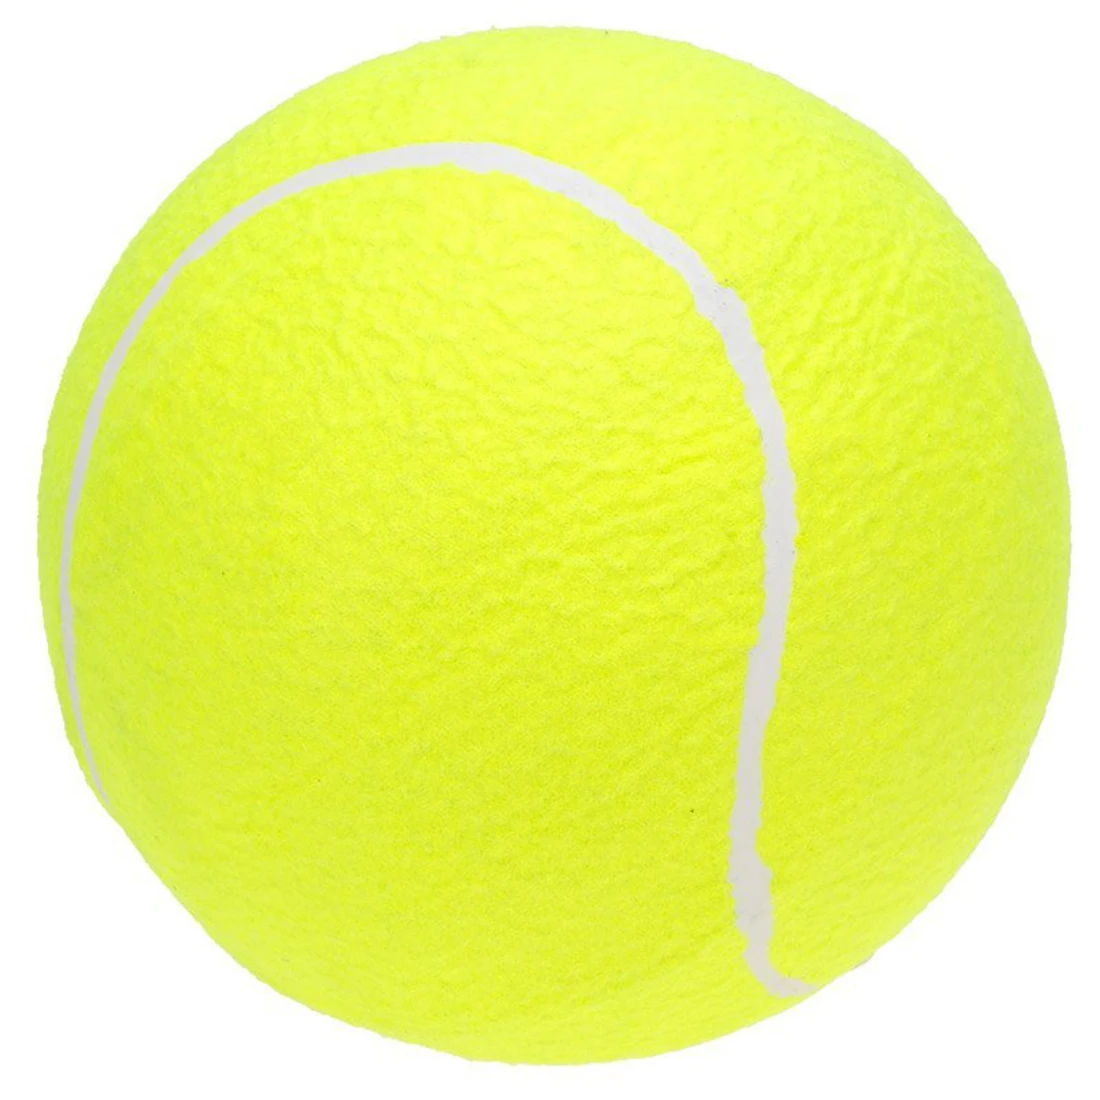 9," Oversize гигантский теннисный мяч для детей взрослых Pet Fun